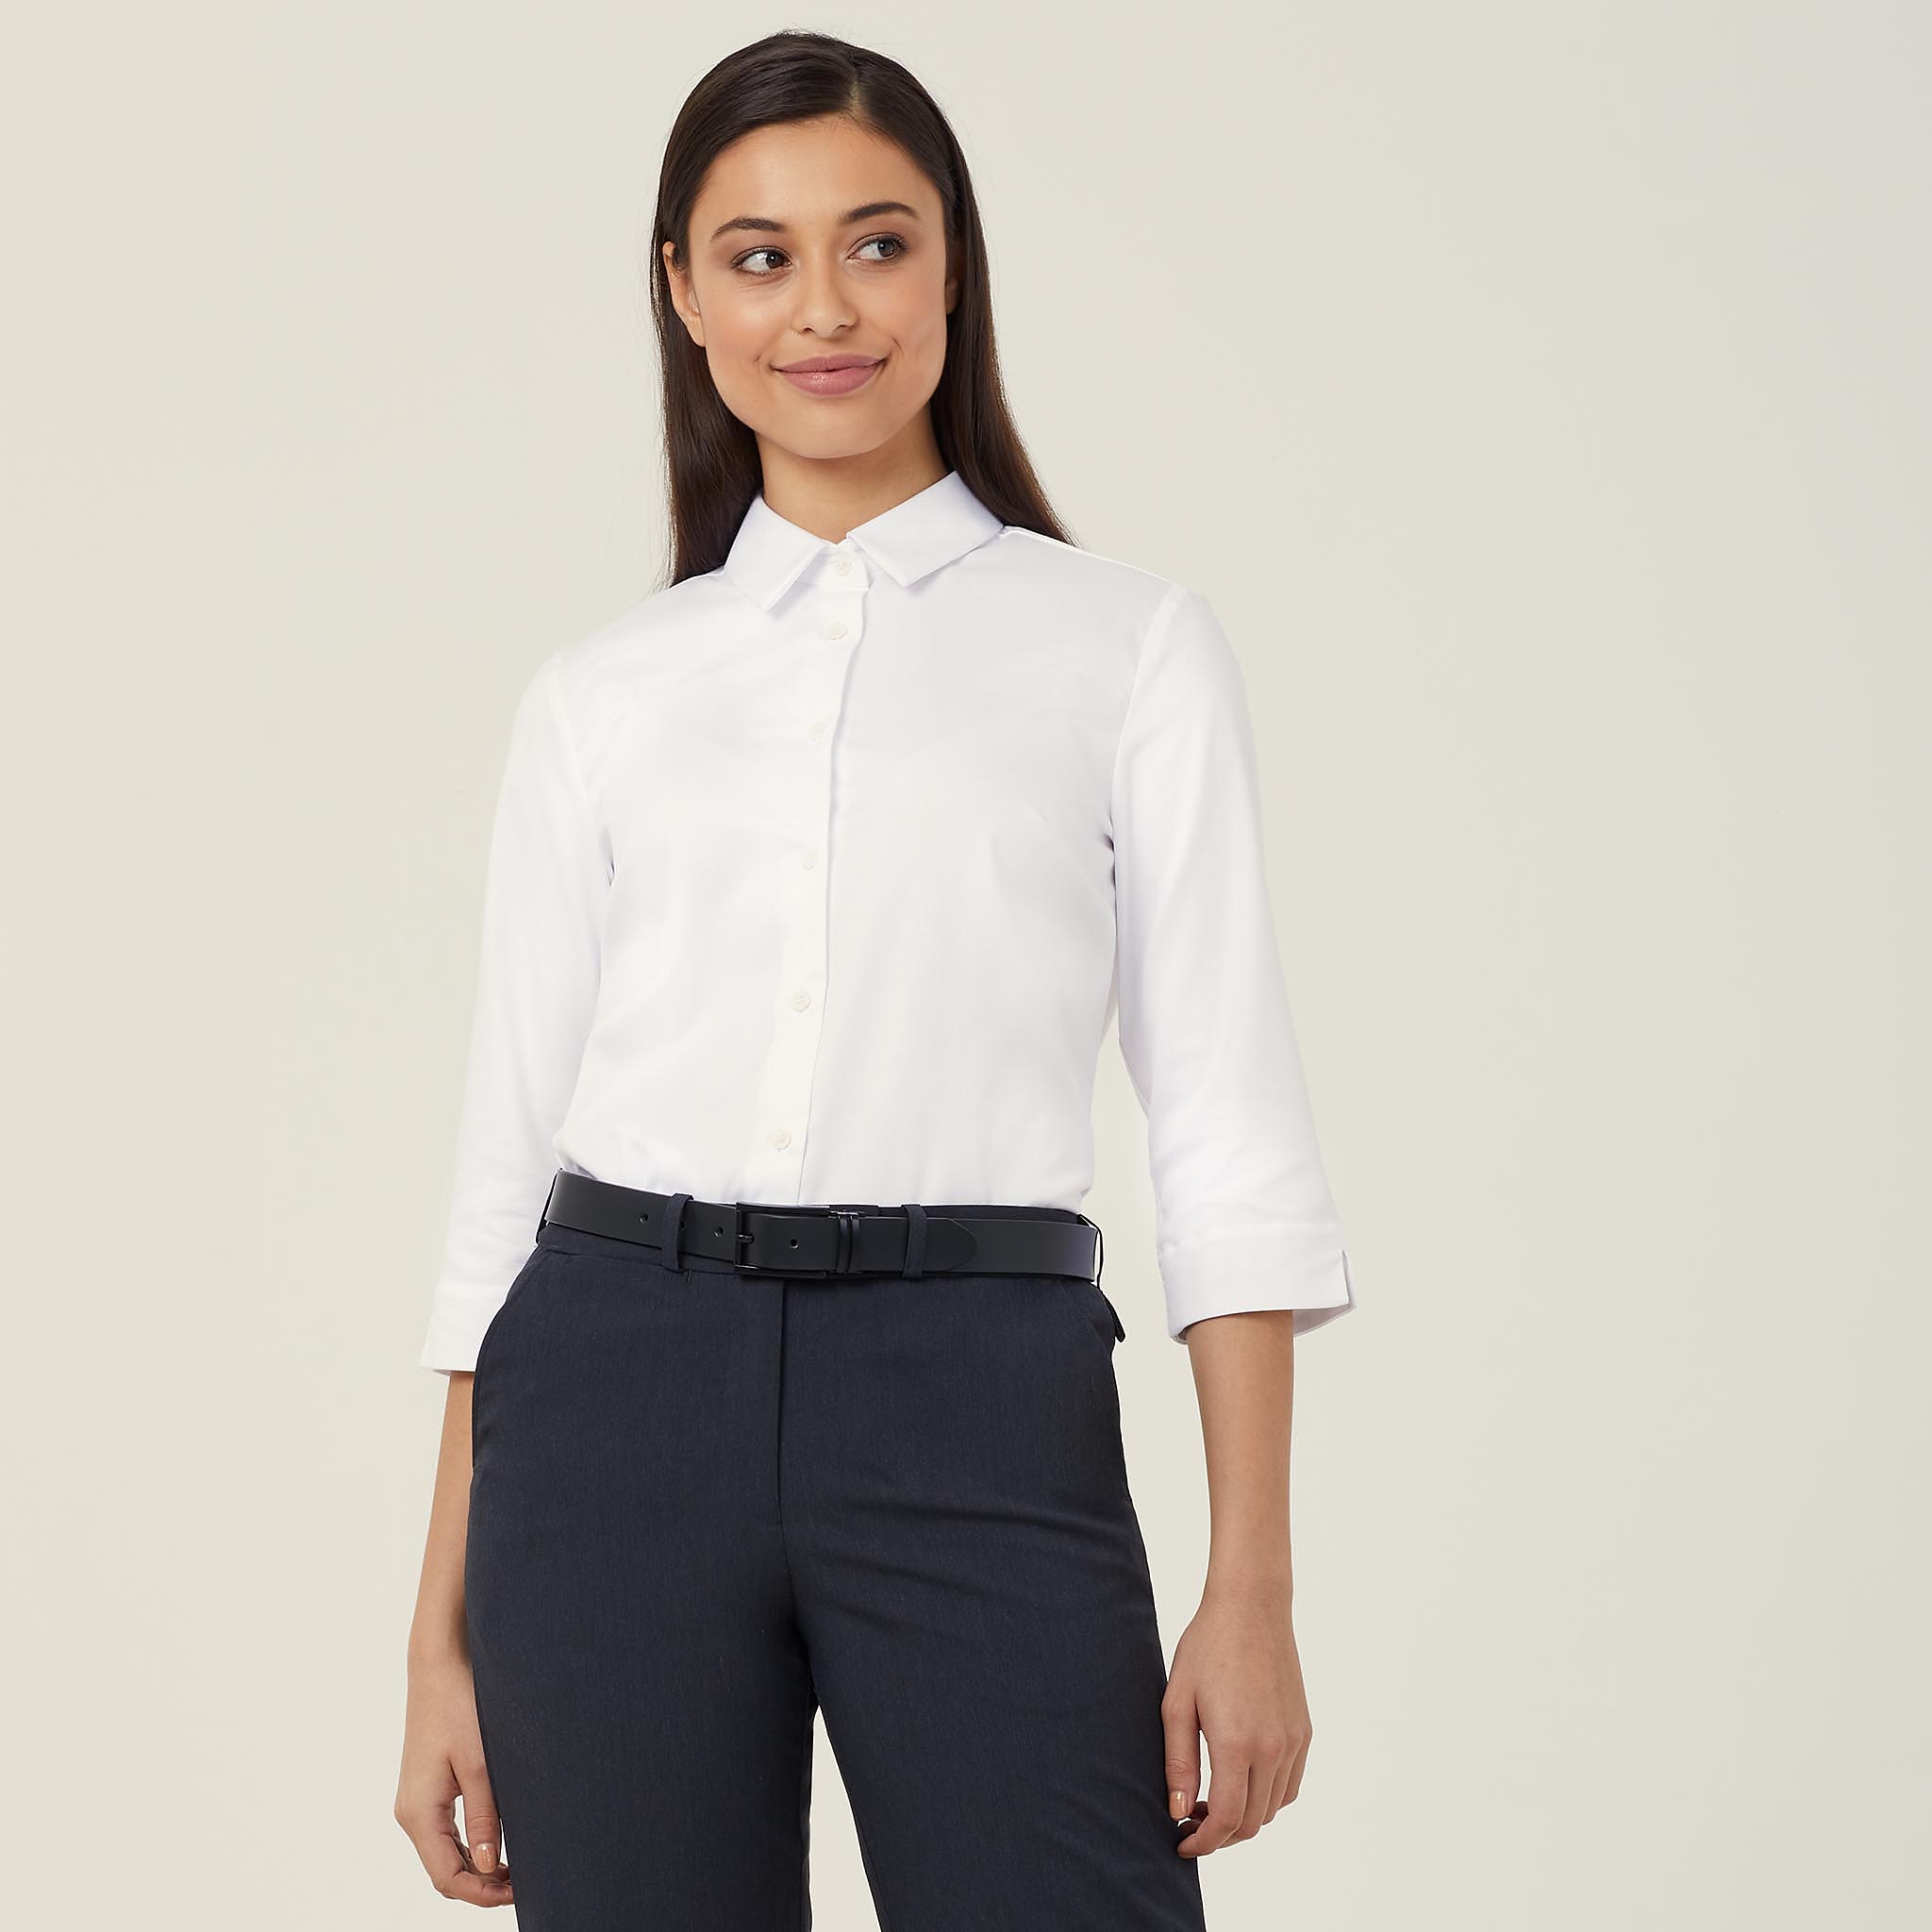 Stretch Textured Twill 3/4 Sleeve Shirt, white | NNT Uniforms